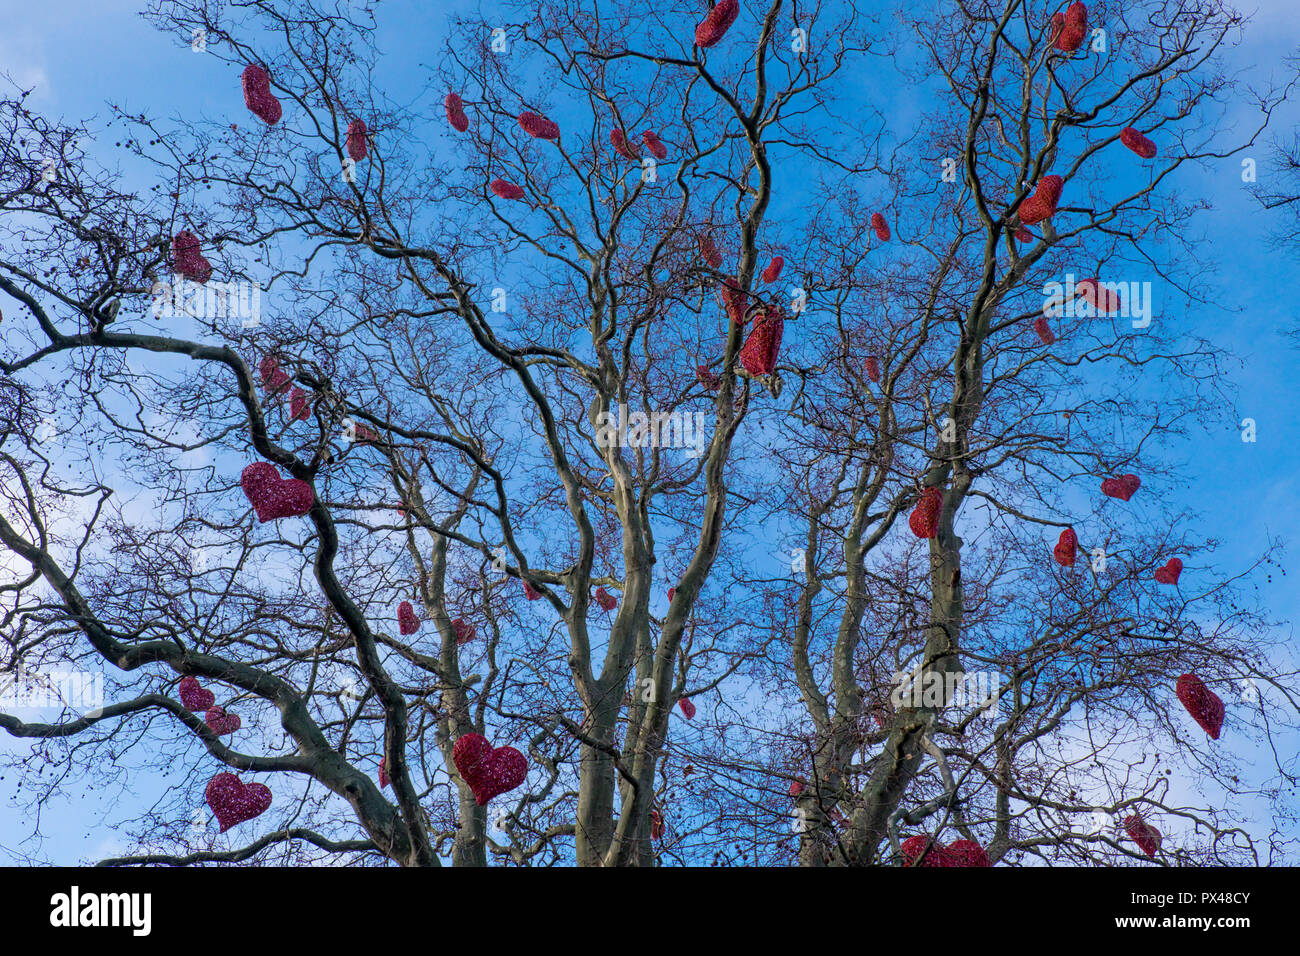 Amour coeur rouge attaché dans les branches d'un arbre, Malmo, Suède Banque D'Images